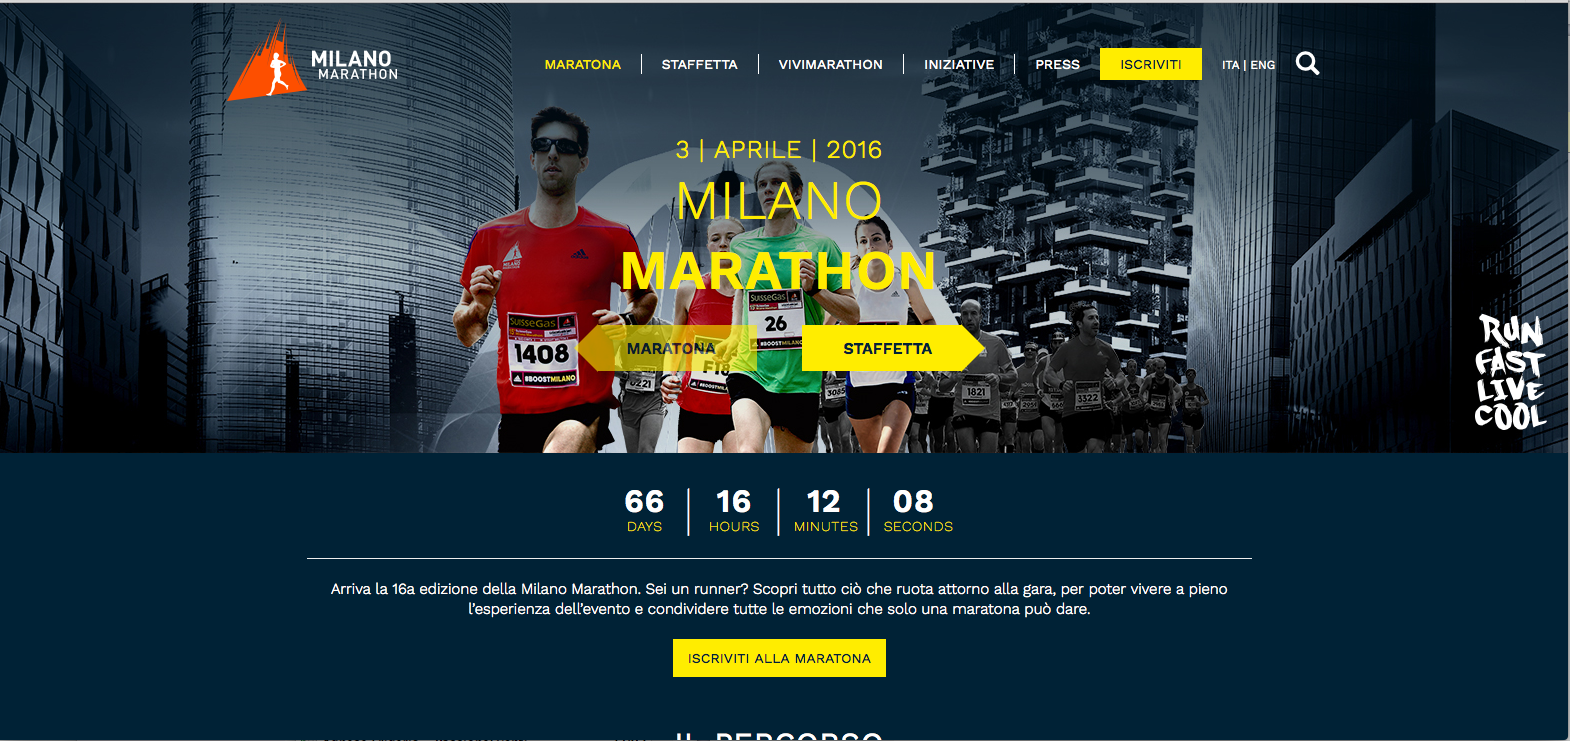 Rcs Sport - Rcs Active rivisitano il sito internet della Milano Marathon